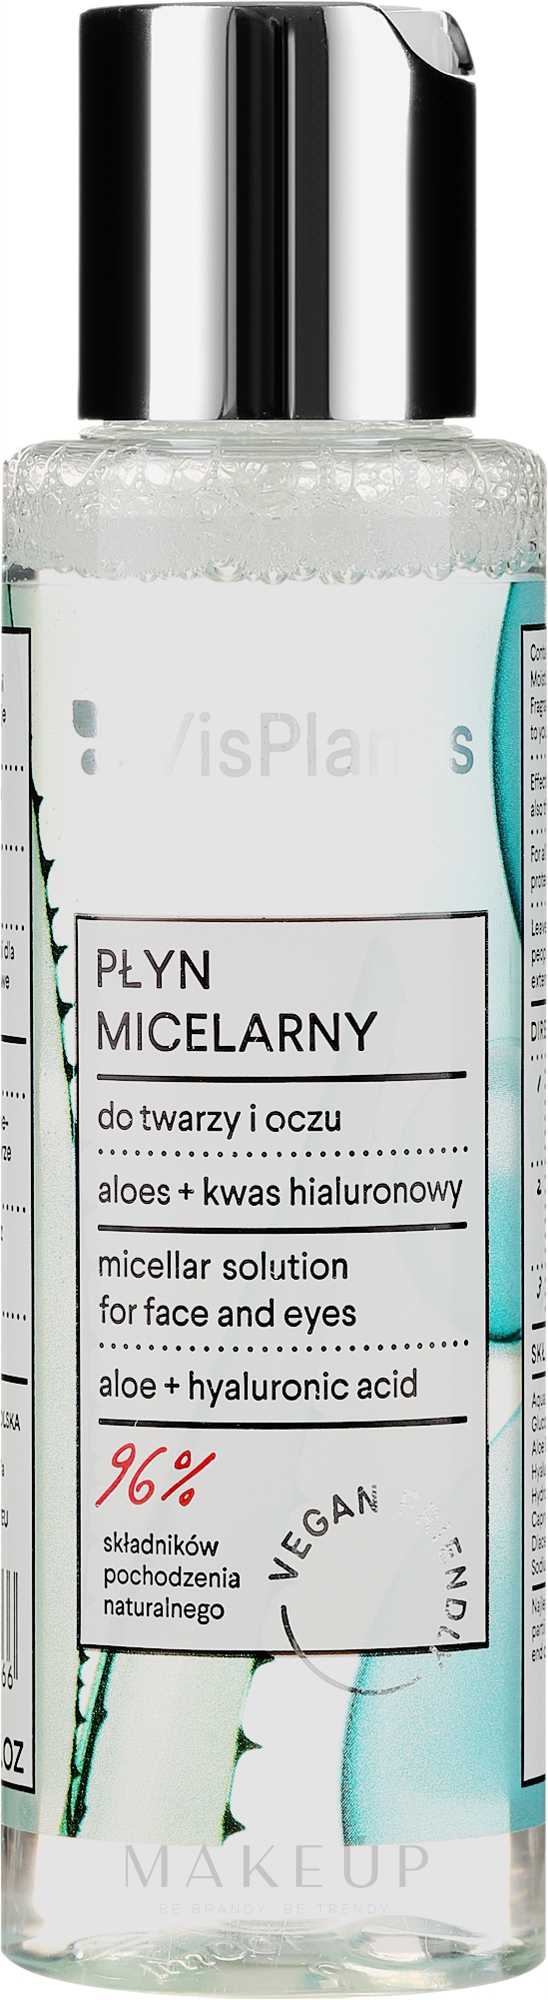 3in1 Mizellenwasser mit Aloe - Vis Plantis Herbal Vital Care Micellar Solution 3in1 — Bild 100 ml